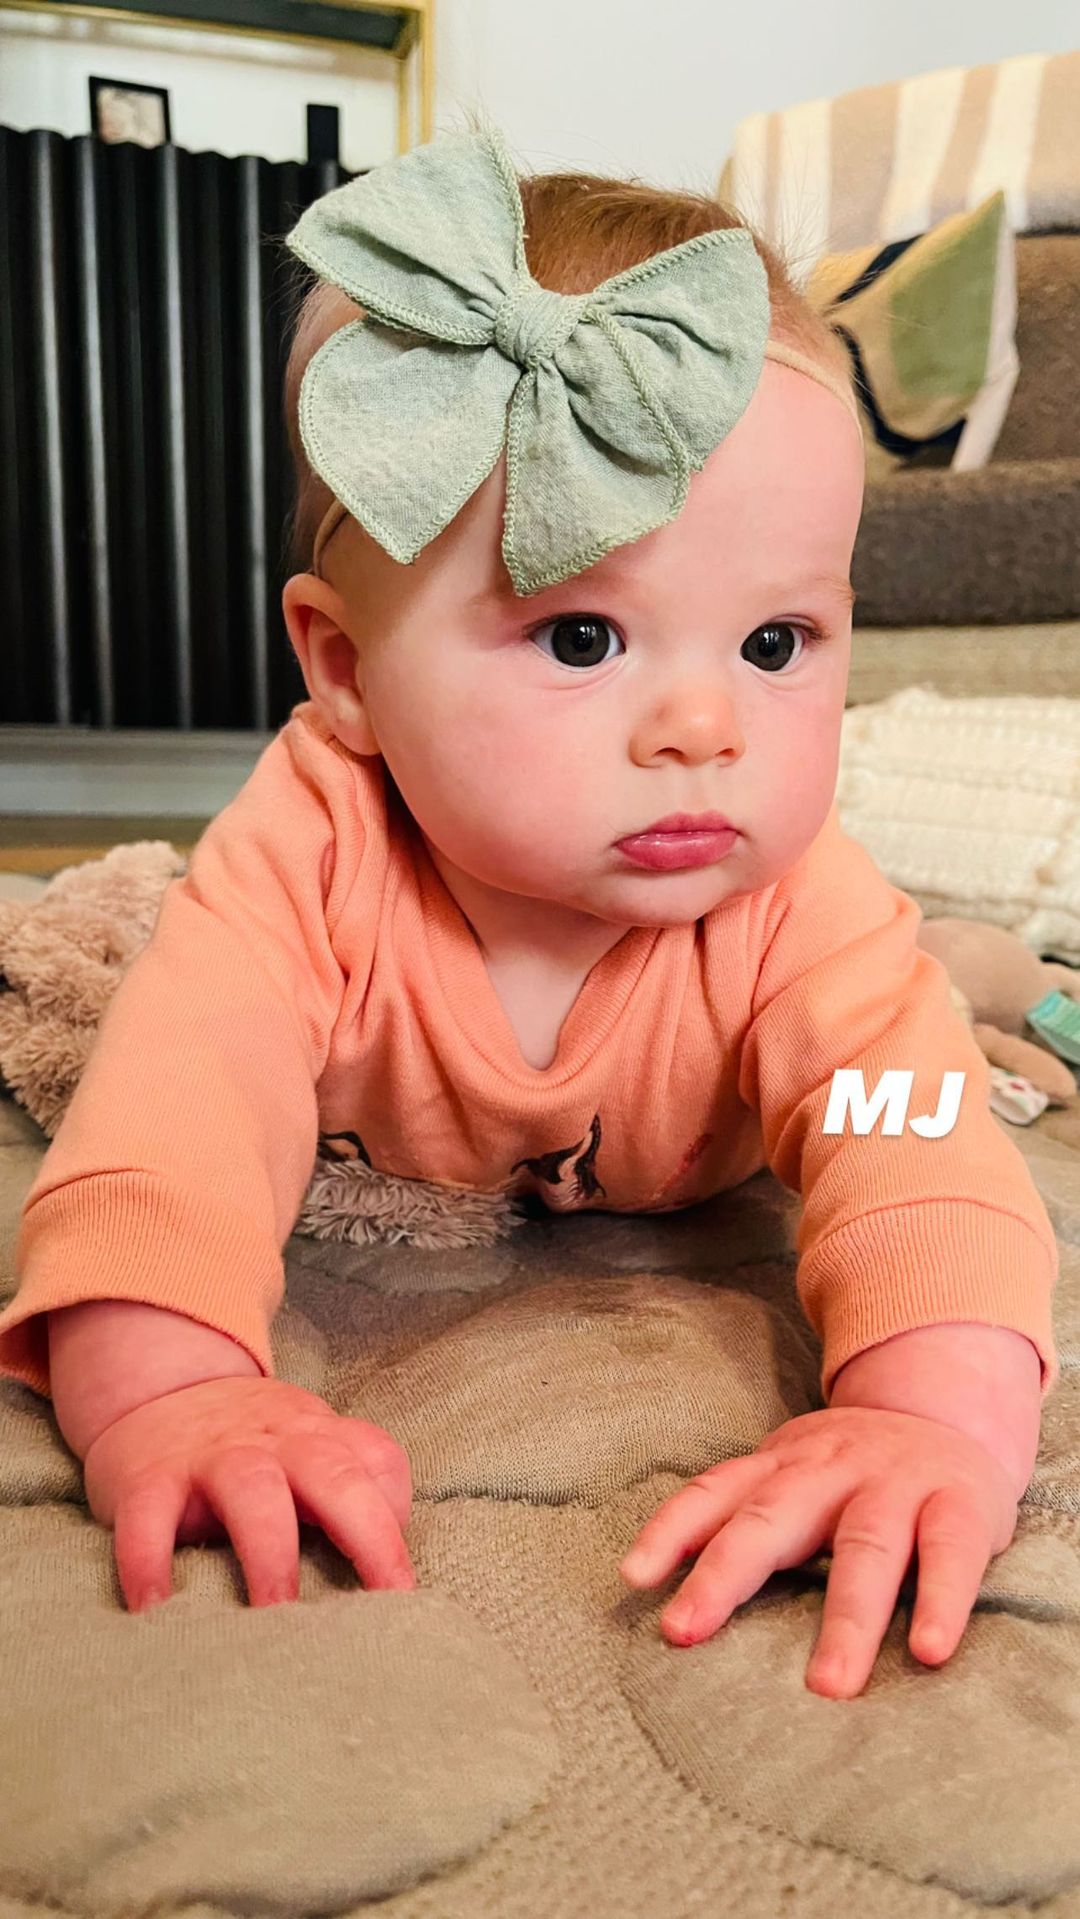 Hilary Duff and Matthew Koma's Daughter Mae's Baby Album